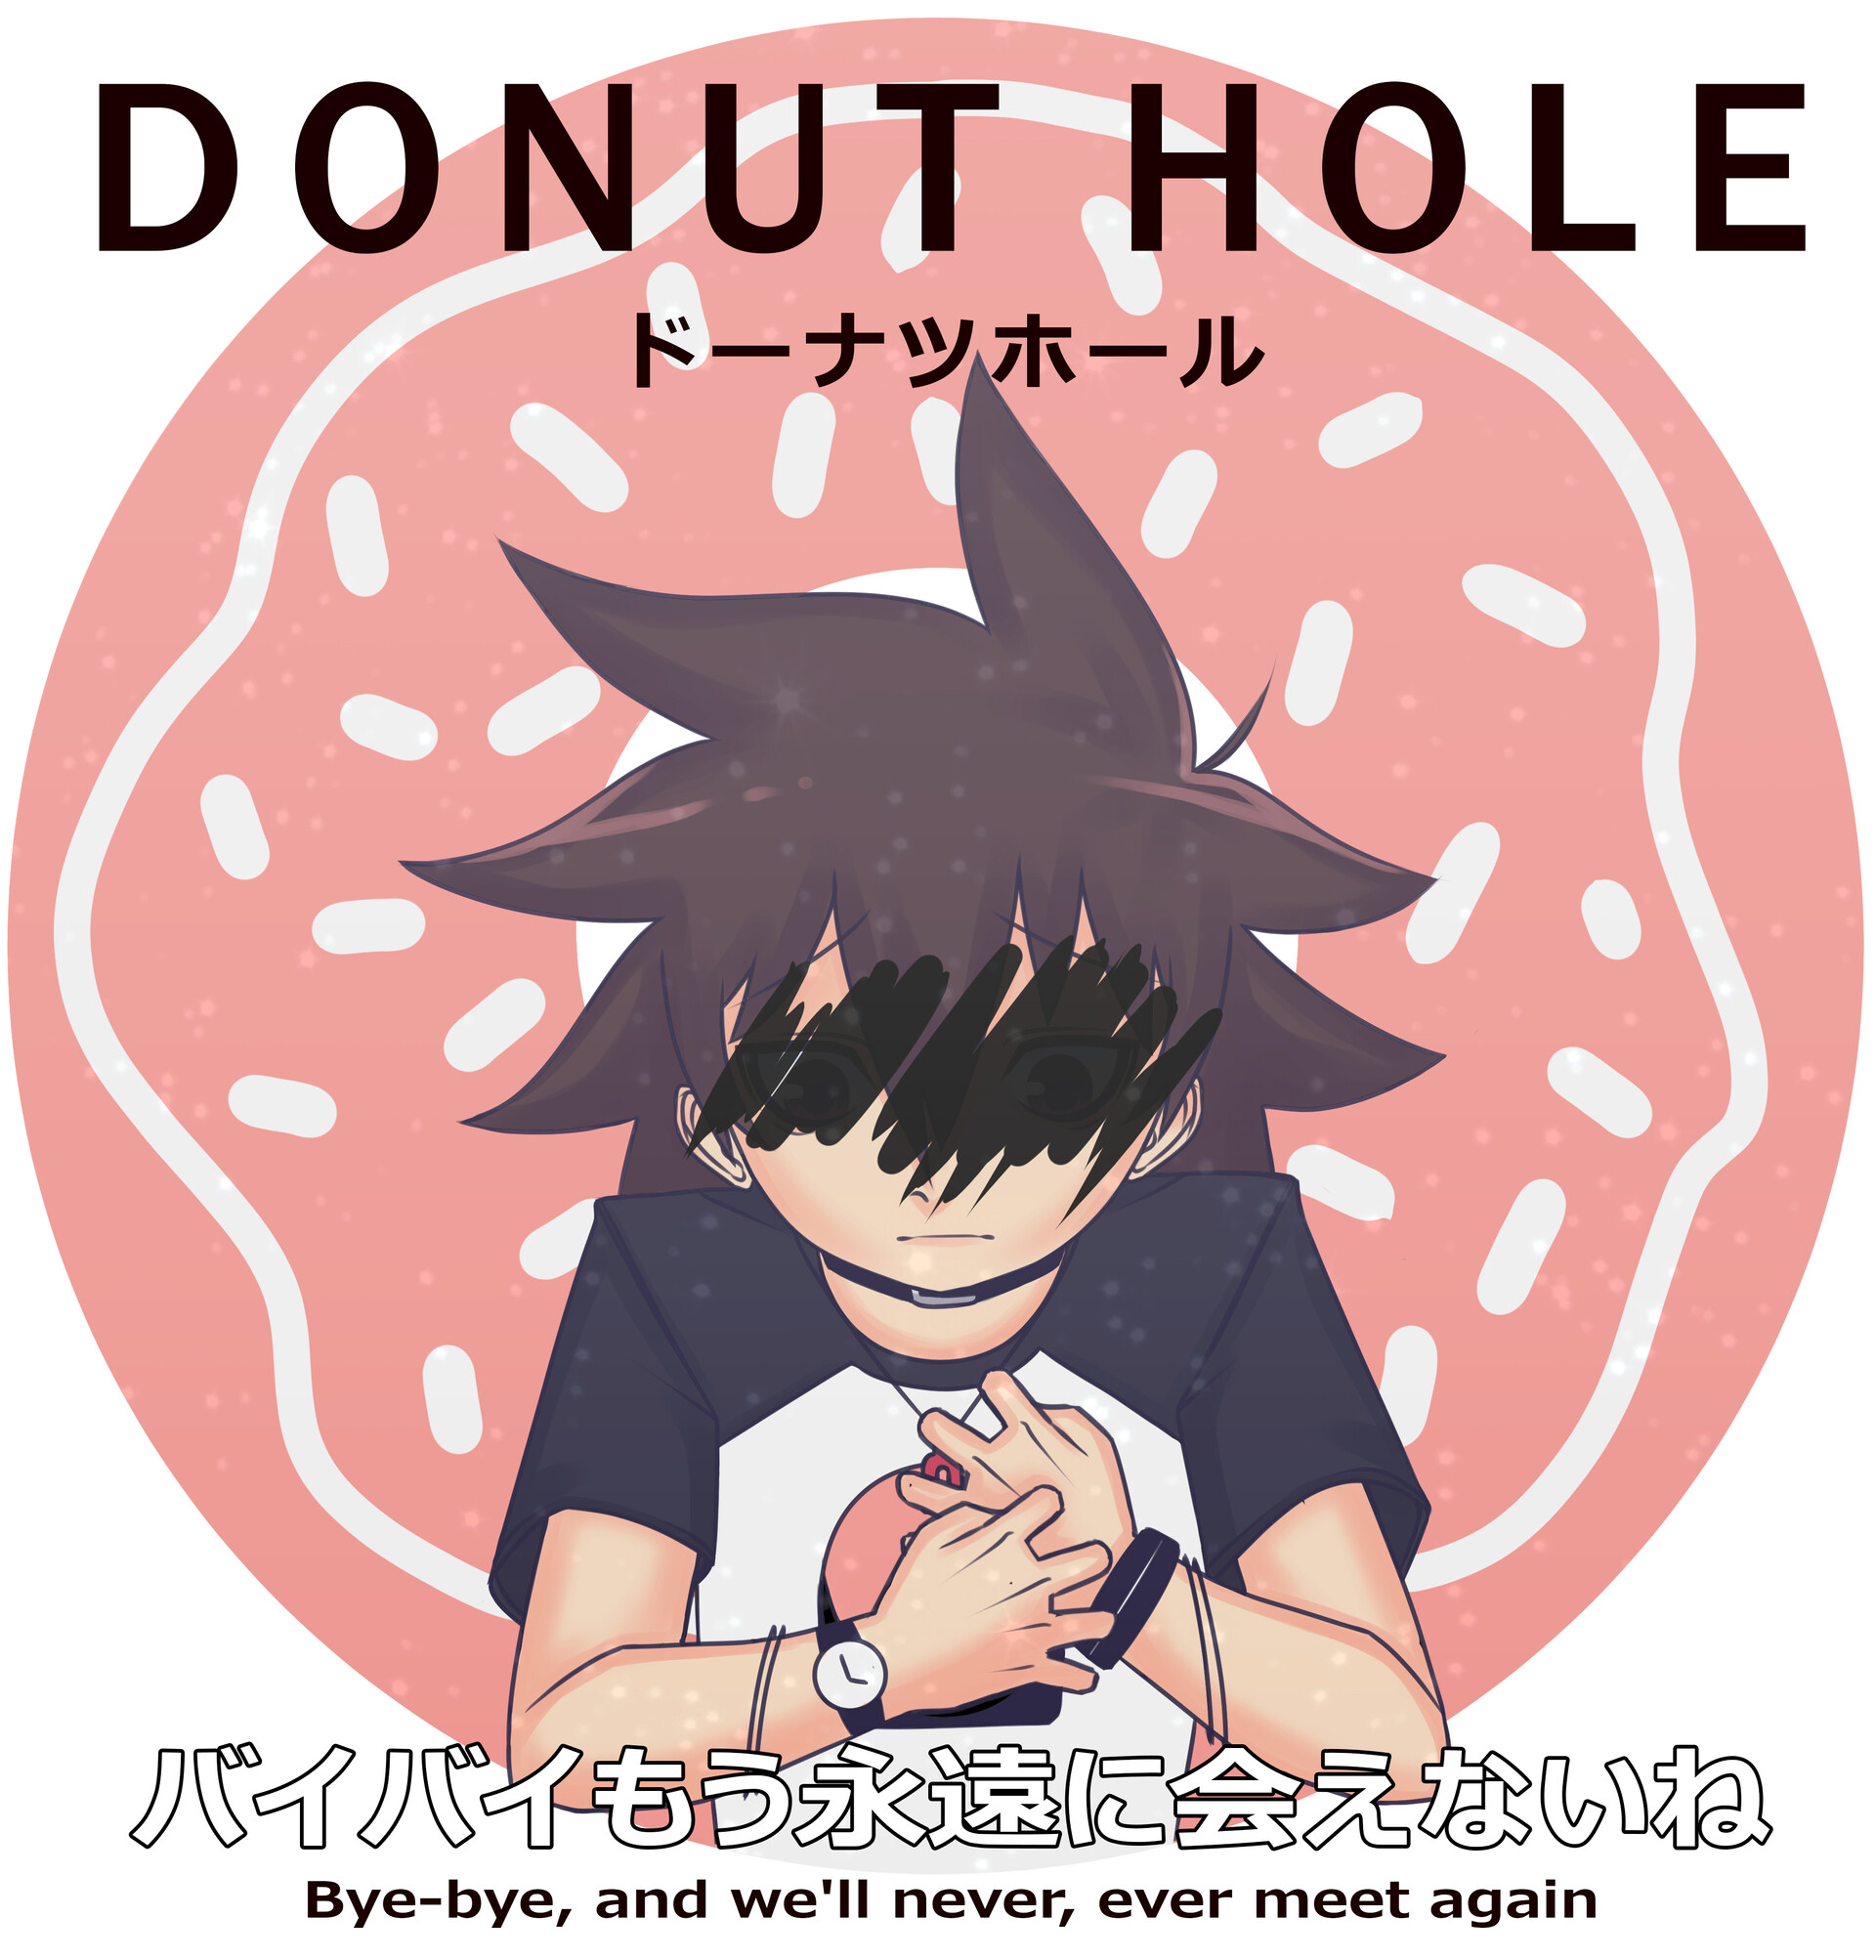 Chris Kuether Donut Hole Fanart Early 18